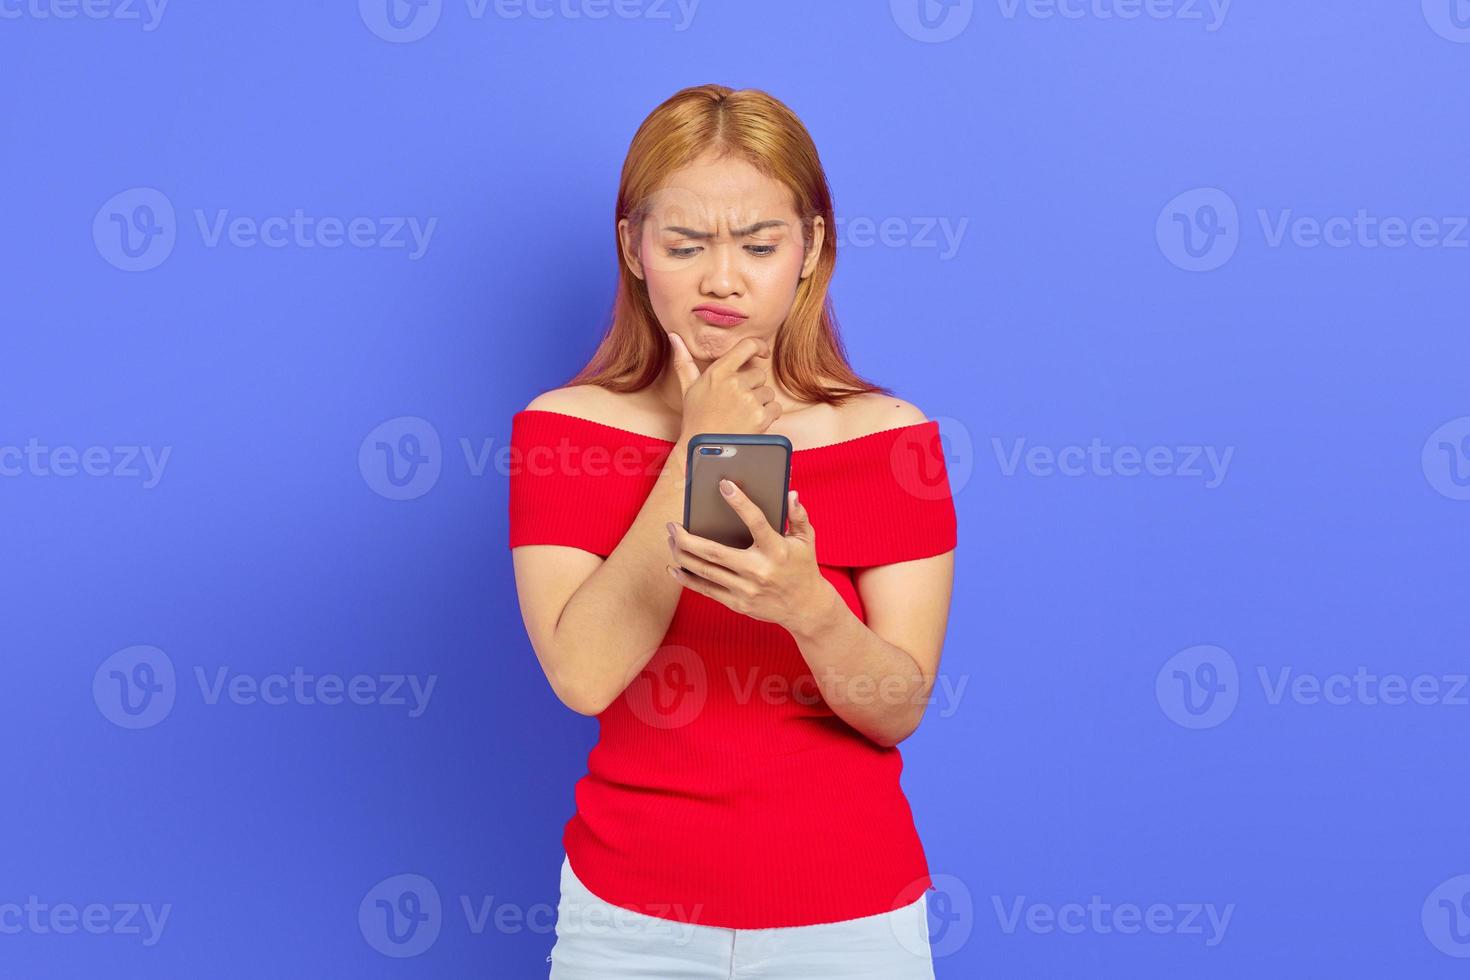 portret van ontevreden jonge Aziatische vrouw die fronst terwijl ze een smartphone vasthoudt op een paarse achtergrond foto